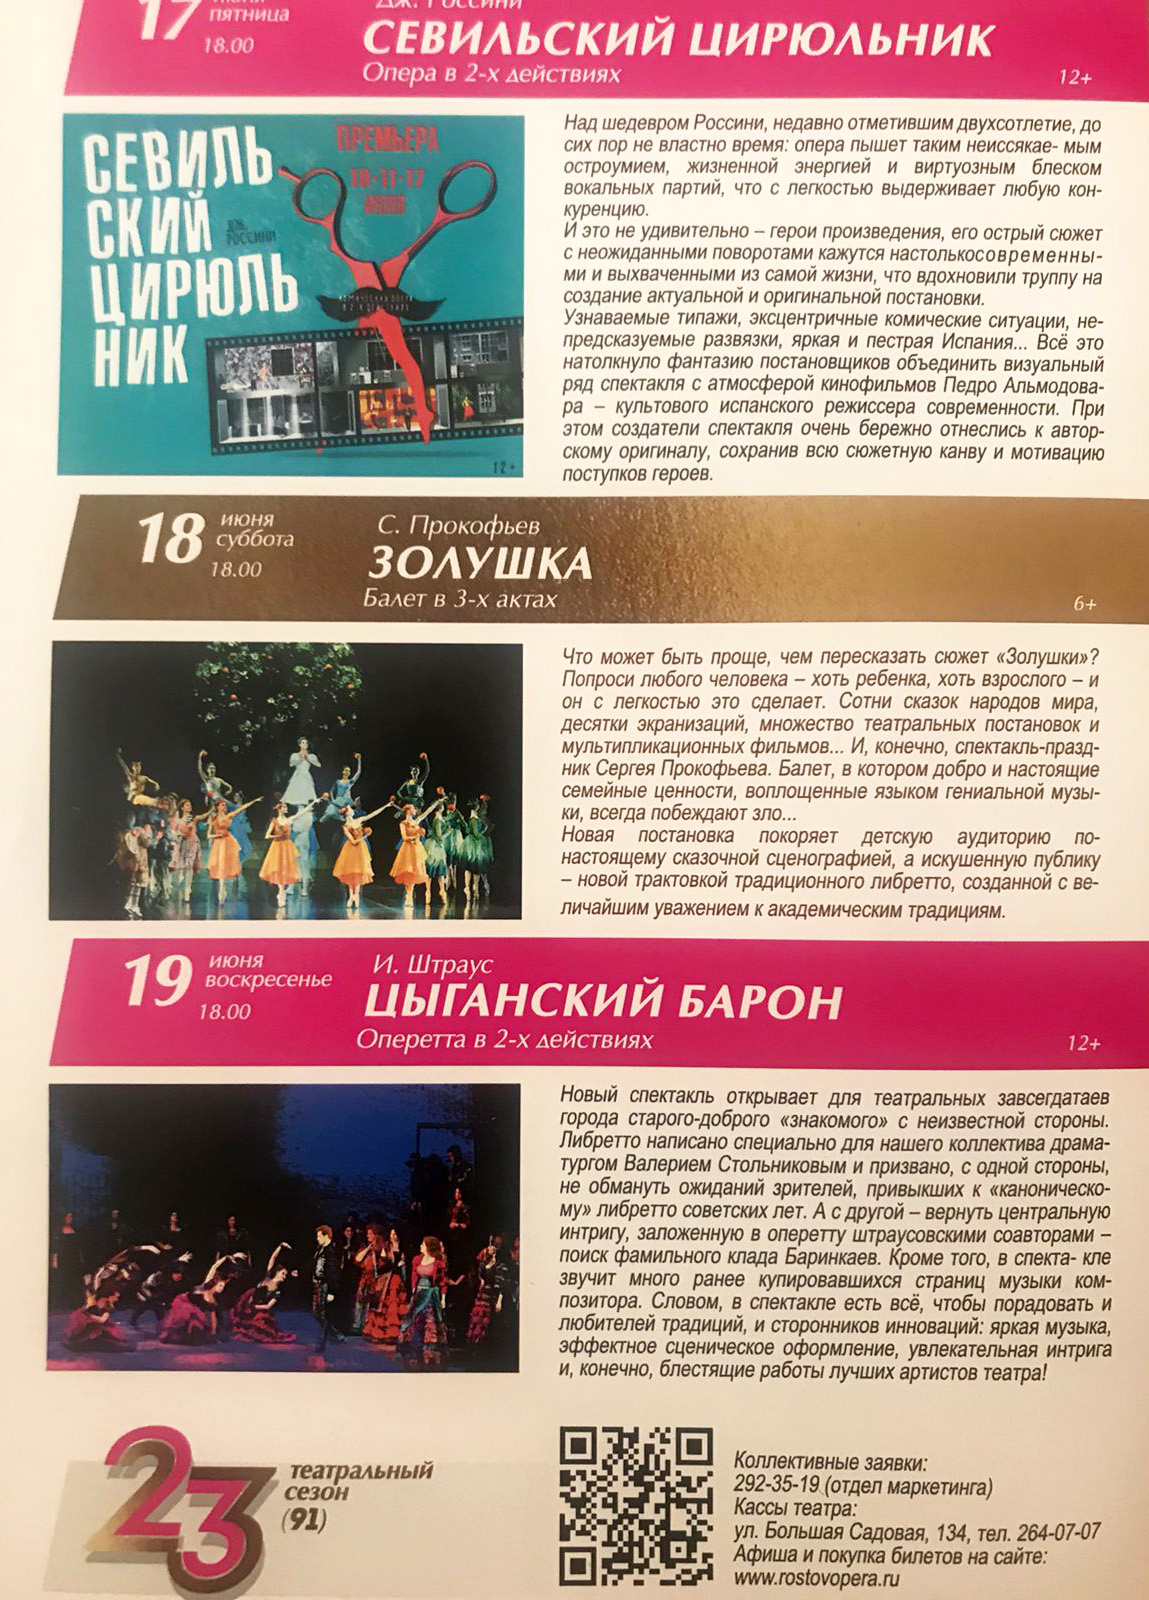 Традиционный в конце театрального сезона Парад Премьер Ростовского музыкального театра. Не пропустите!